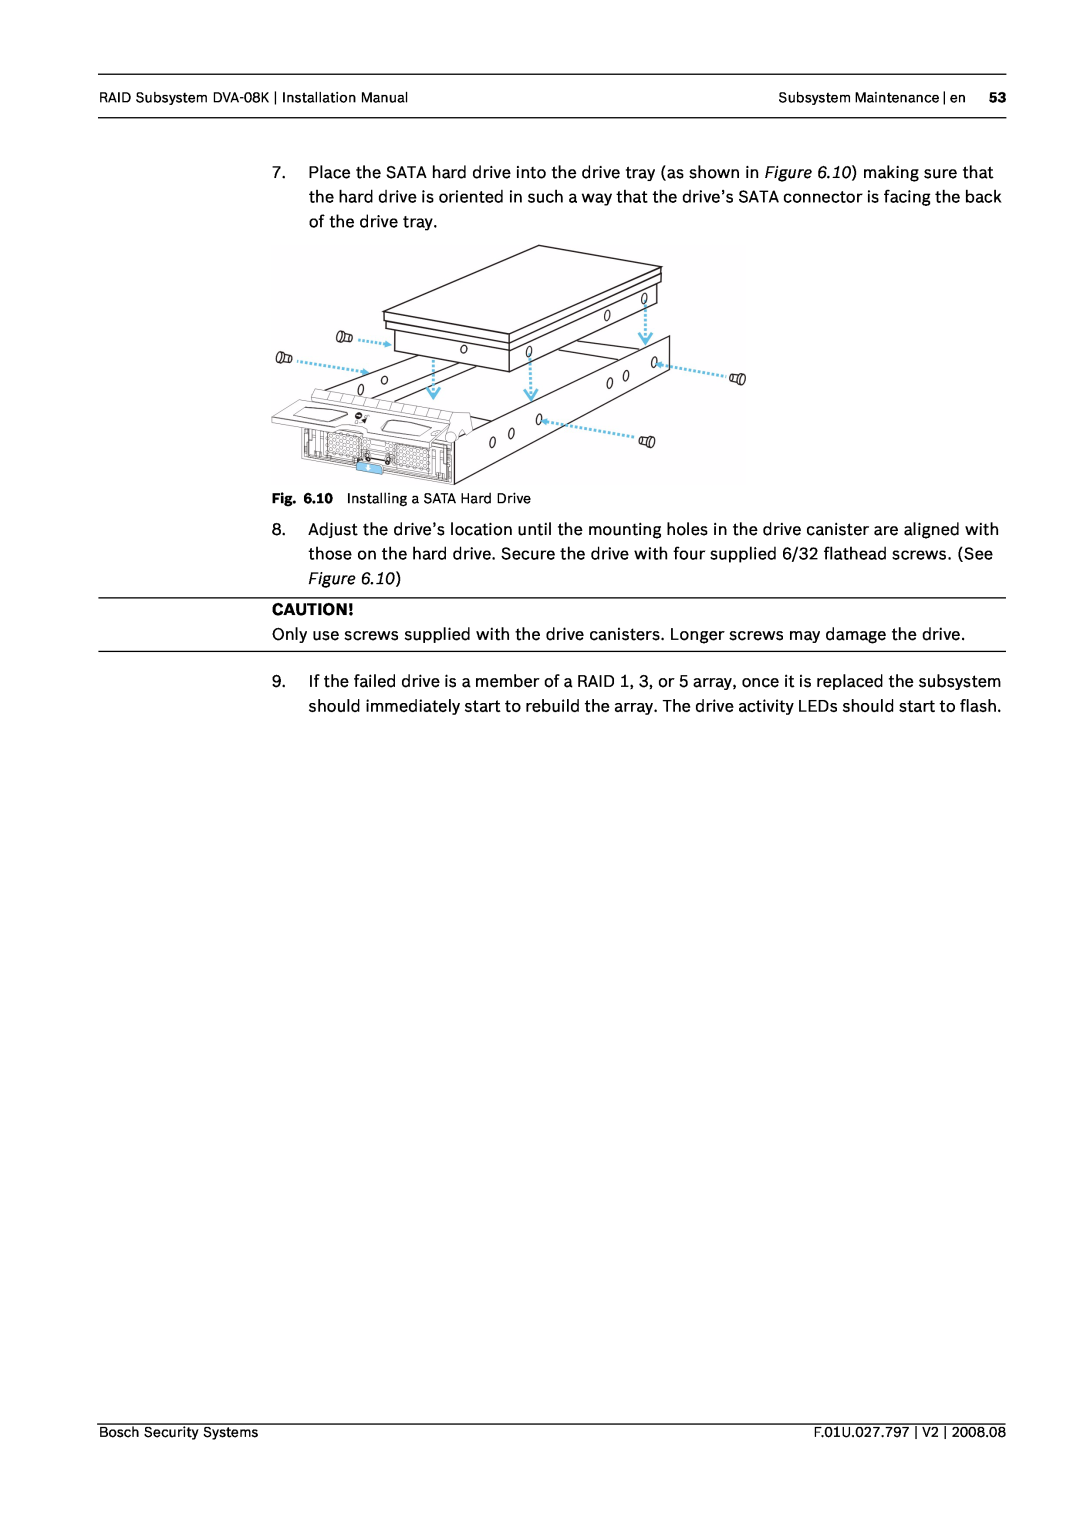 Bosch Appliances RAID Subsystem DVA-08K Installation Manual, Subsystem Maintenance en, 10 Installing a SATA Hard Drive 